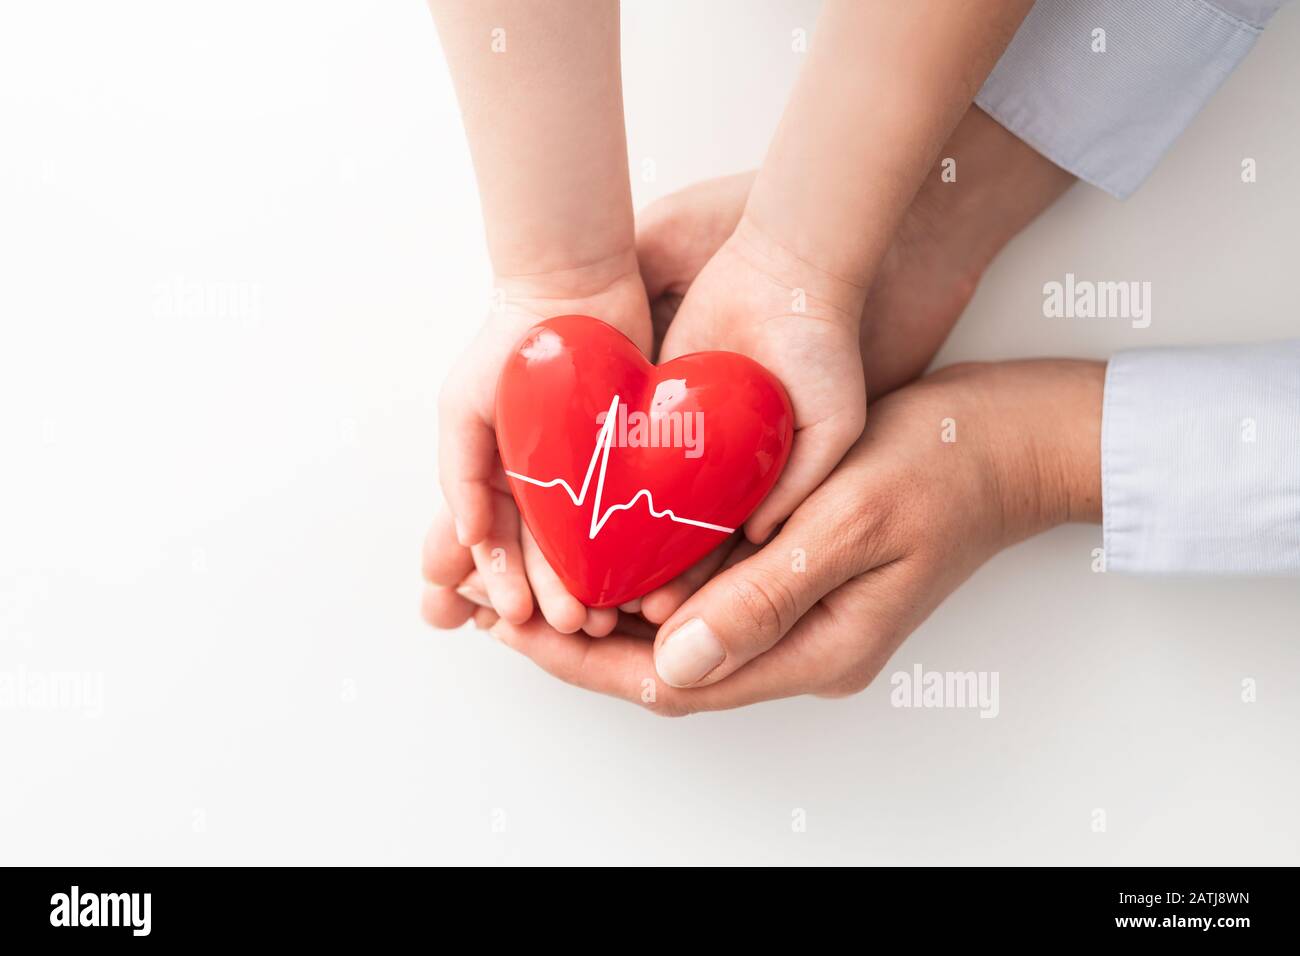 Ein Erwachsener, eine Mutter und ein Kind halten ein rotes Herz in den Händen. Konzept für Wohltätigkeitsorganisation, Krankenversicherung, Liebe, internationaler Kardiologietag. Stockfoto